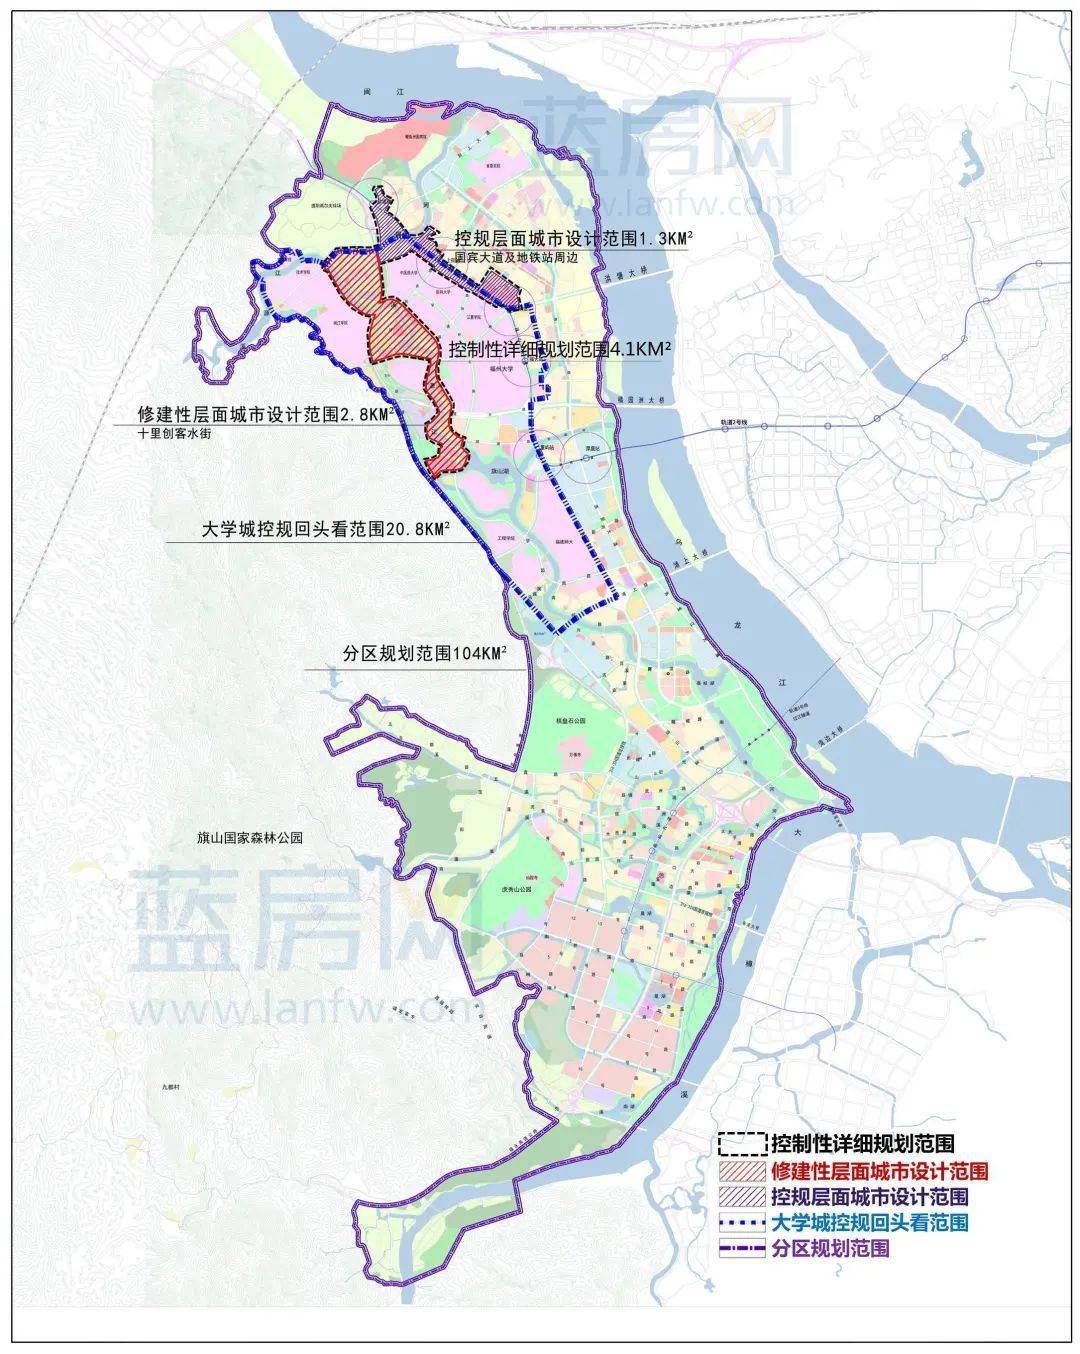 【关注】福州"十四五"规划公布,这些地区将重点打造 !